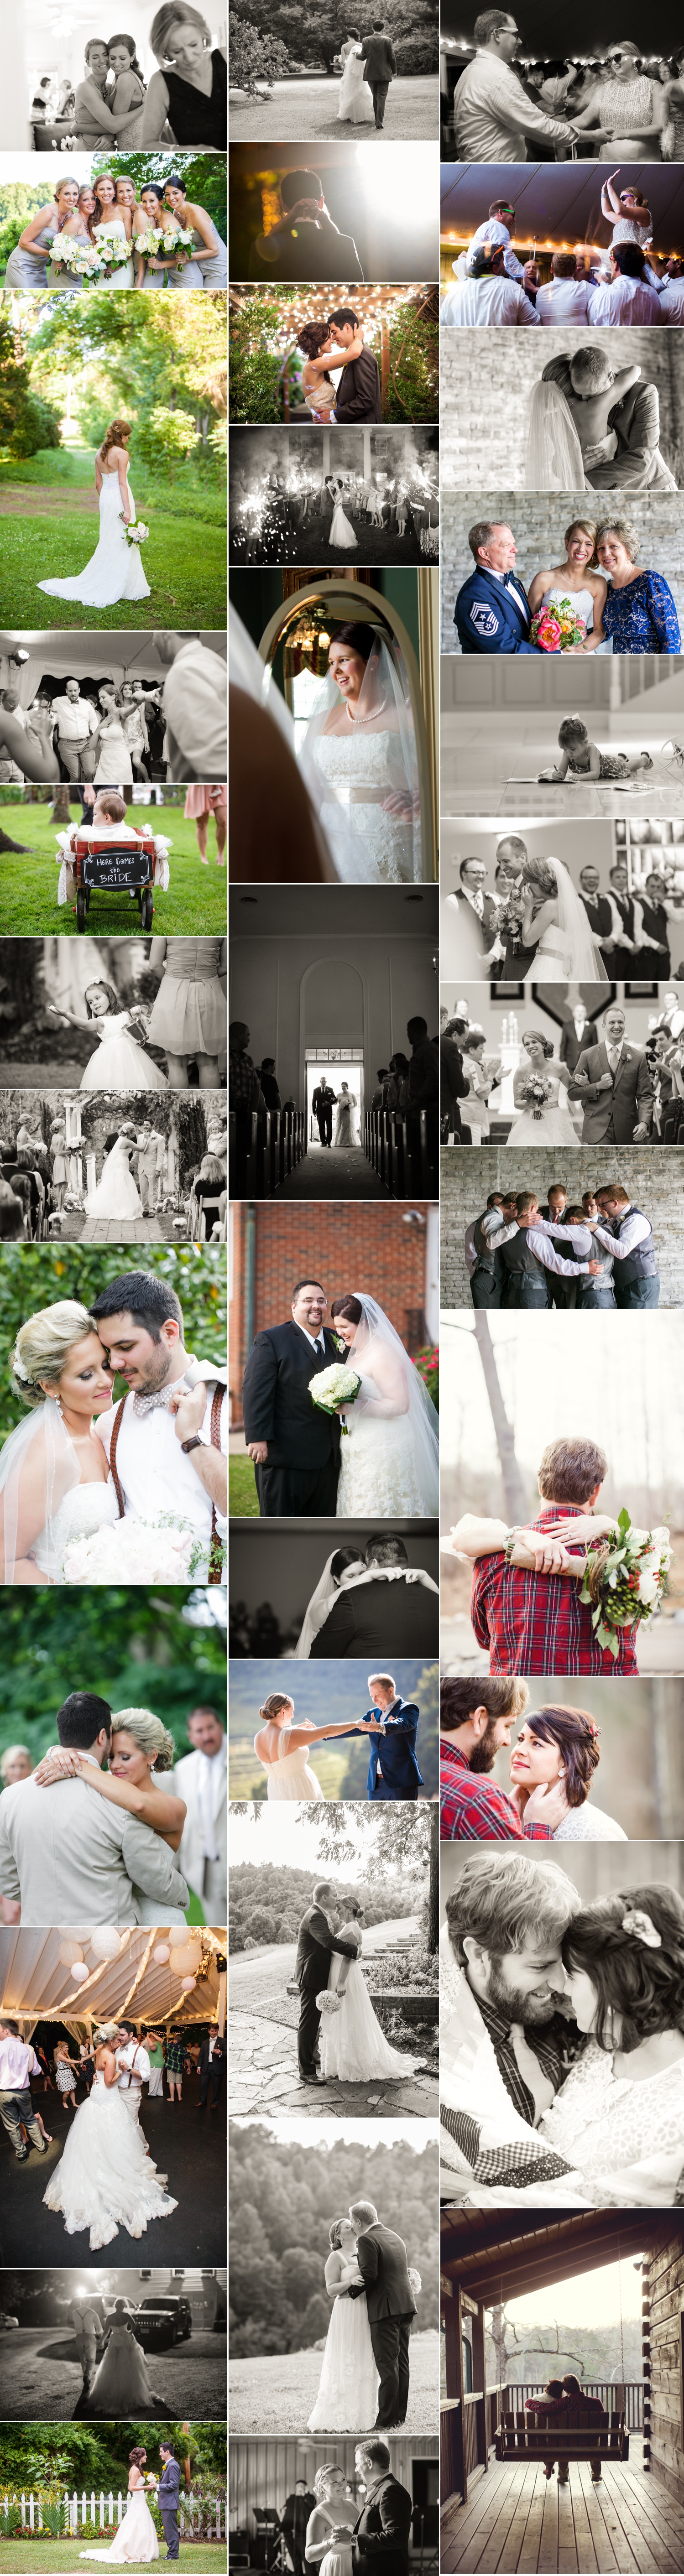 2014-Year-Review-Weddings_0003.jpg